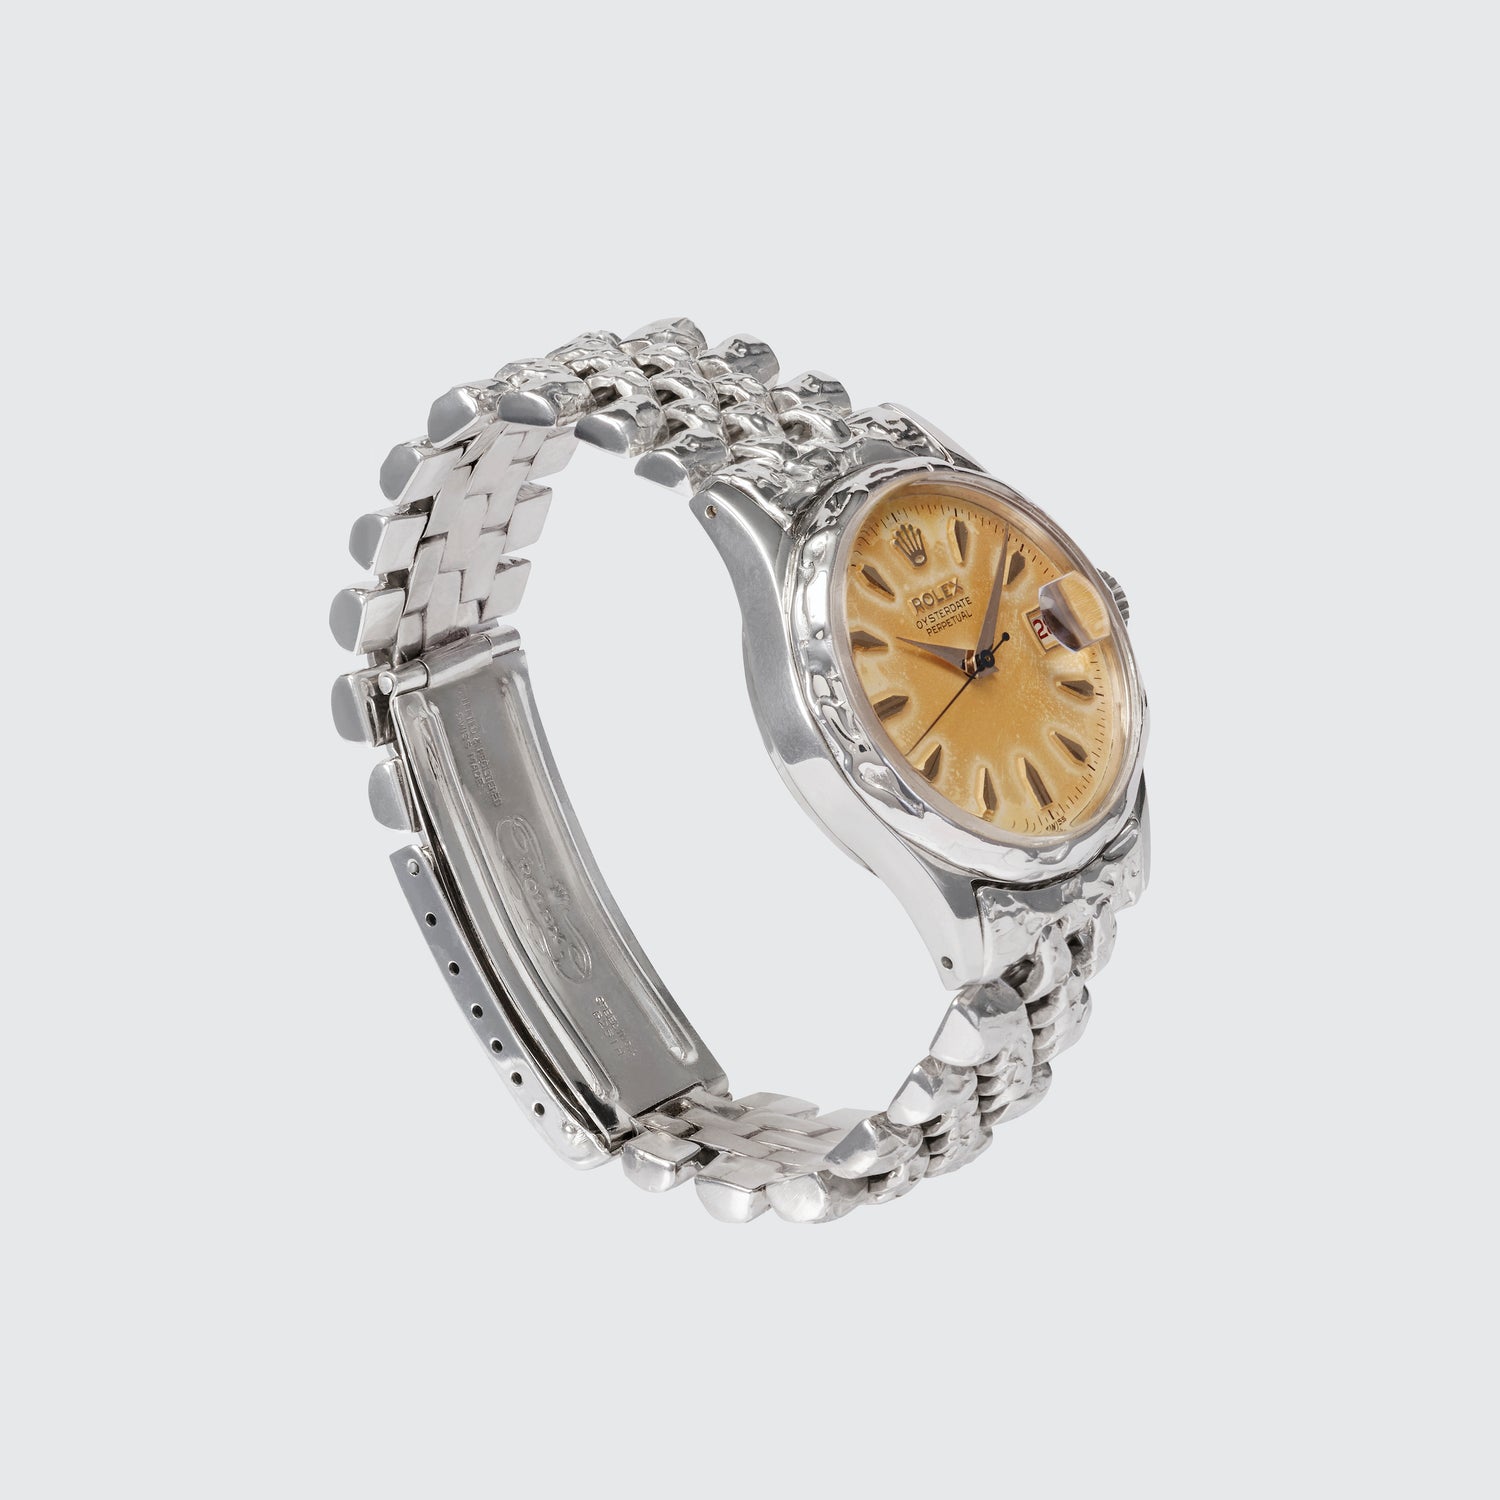 Customised Vintage Rolex Oysterdate Perpetual Watch